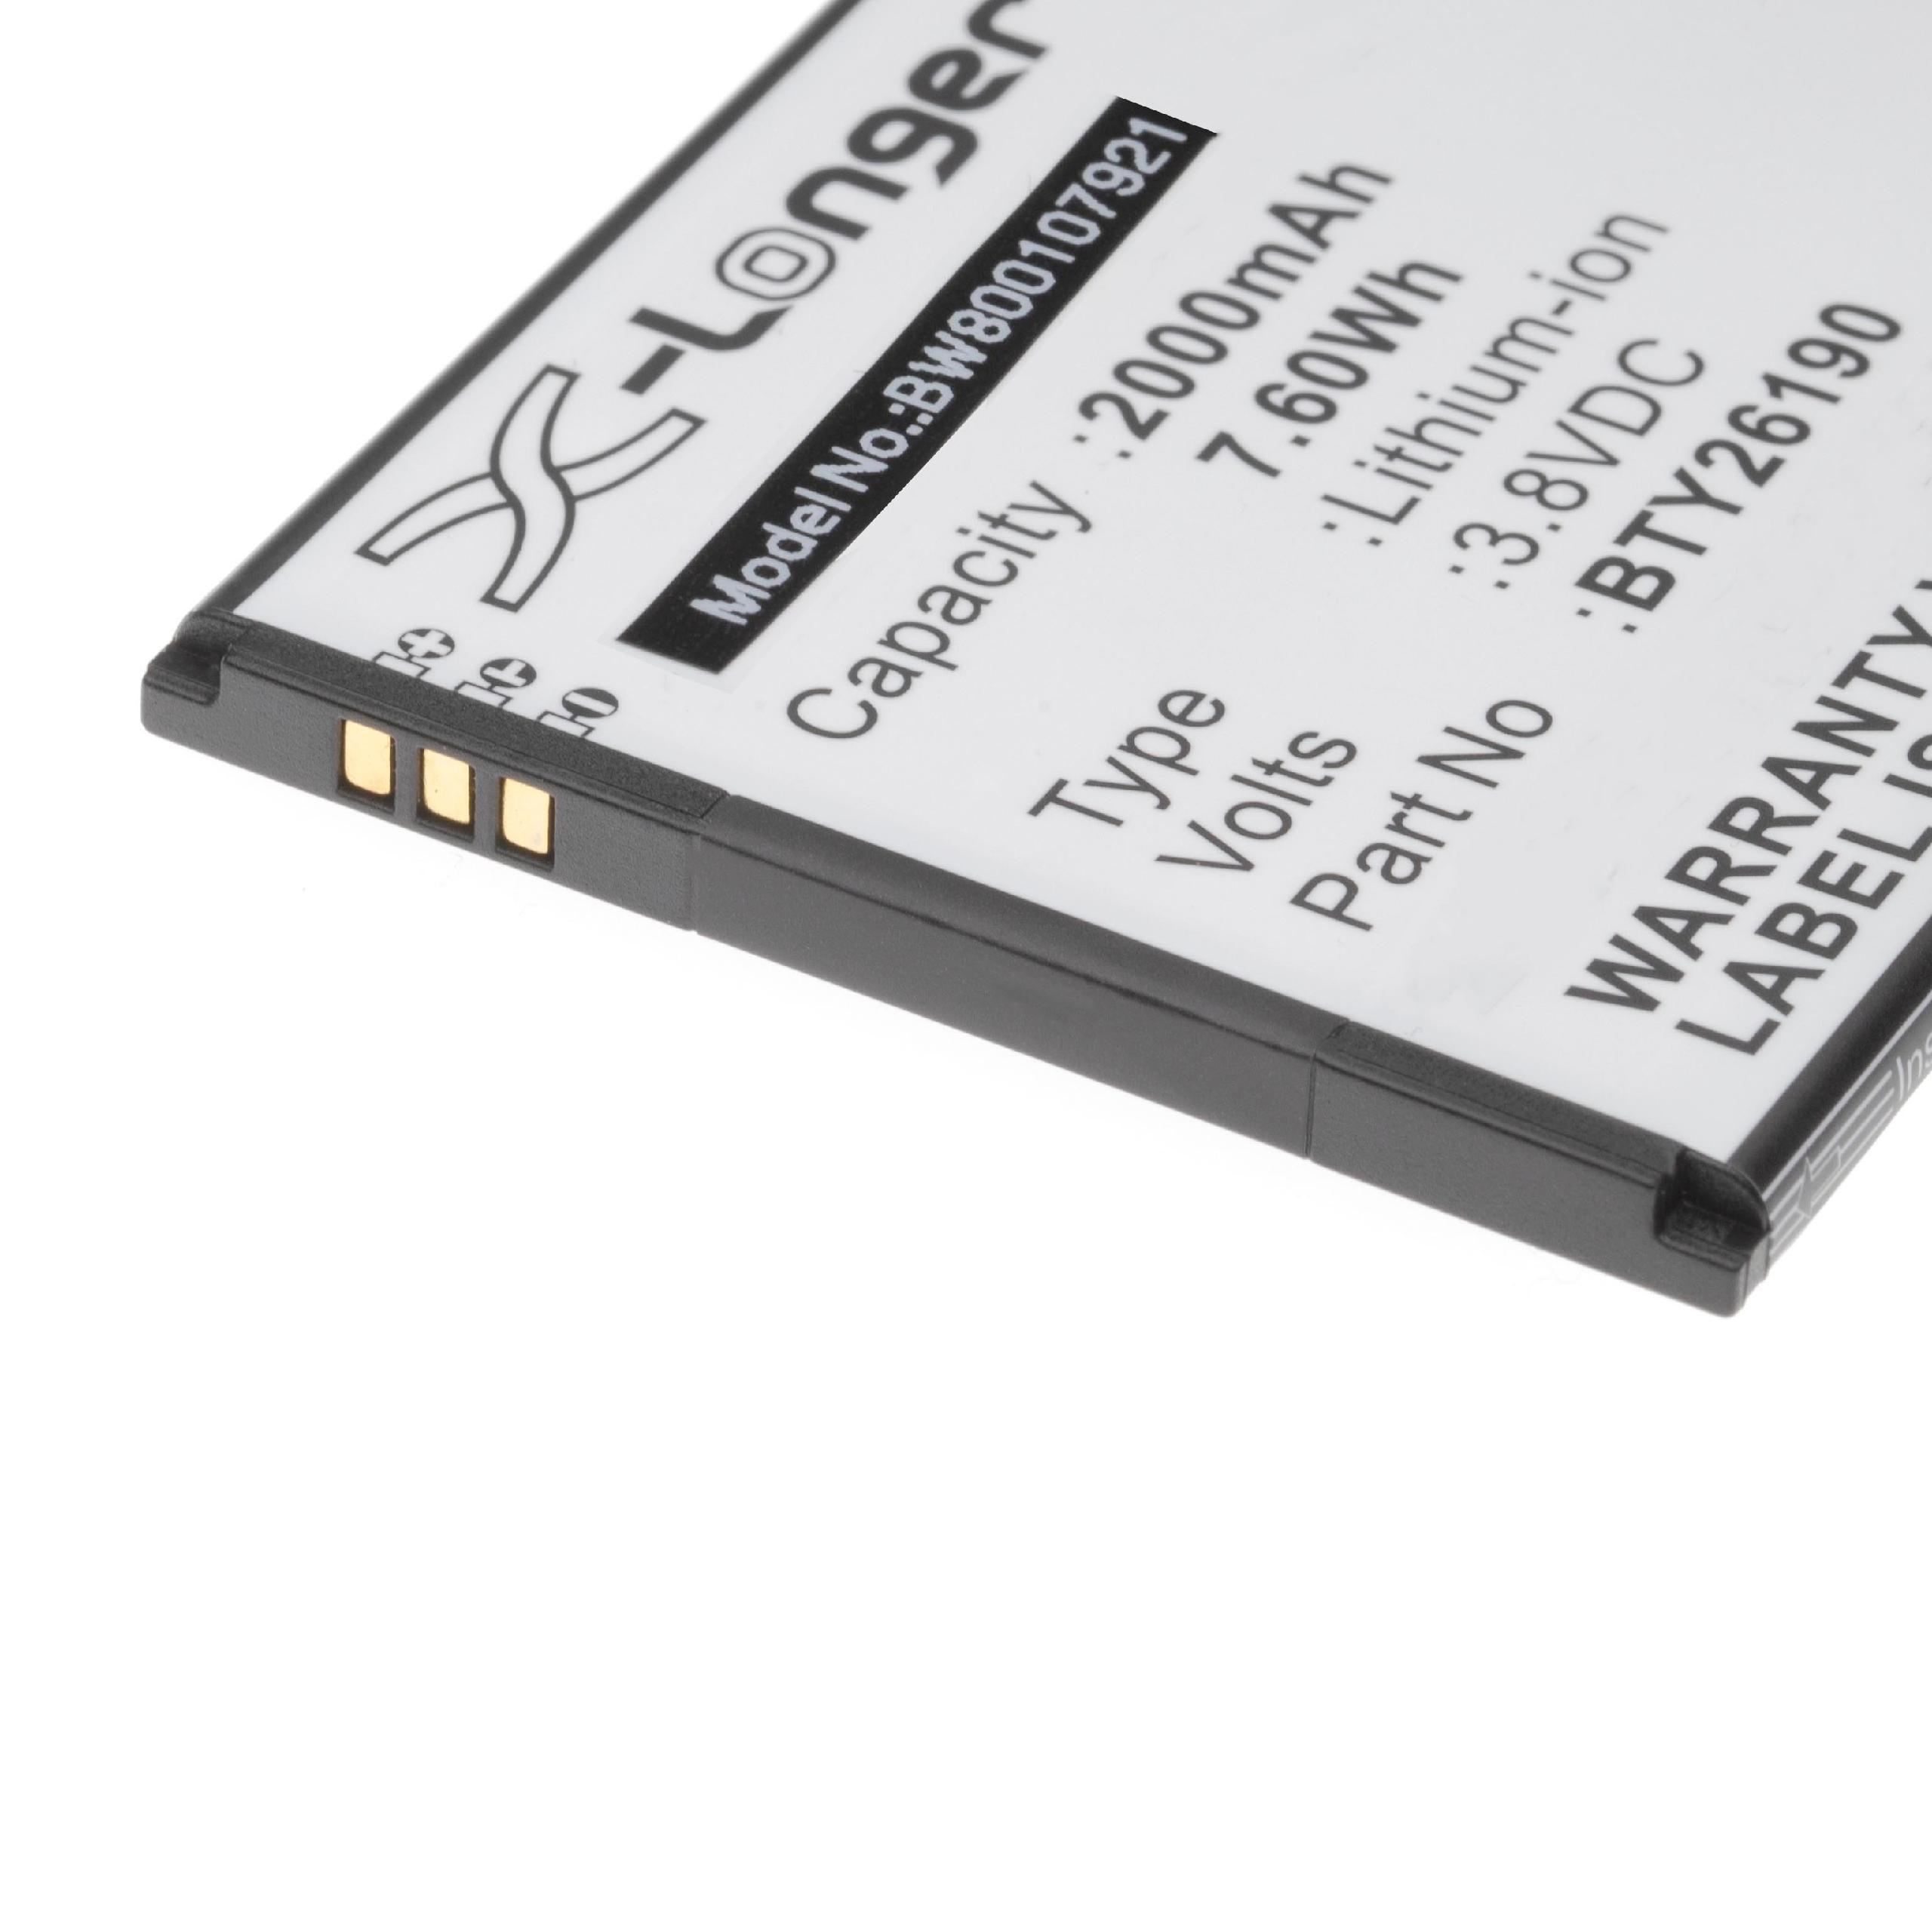 Batterie remplace Elson Mobistel BTY26190 pour téléphone portable - 2000mAh, 3,8V, Li-ion